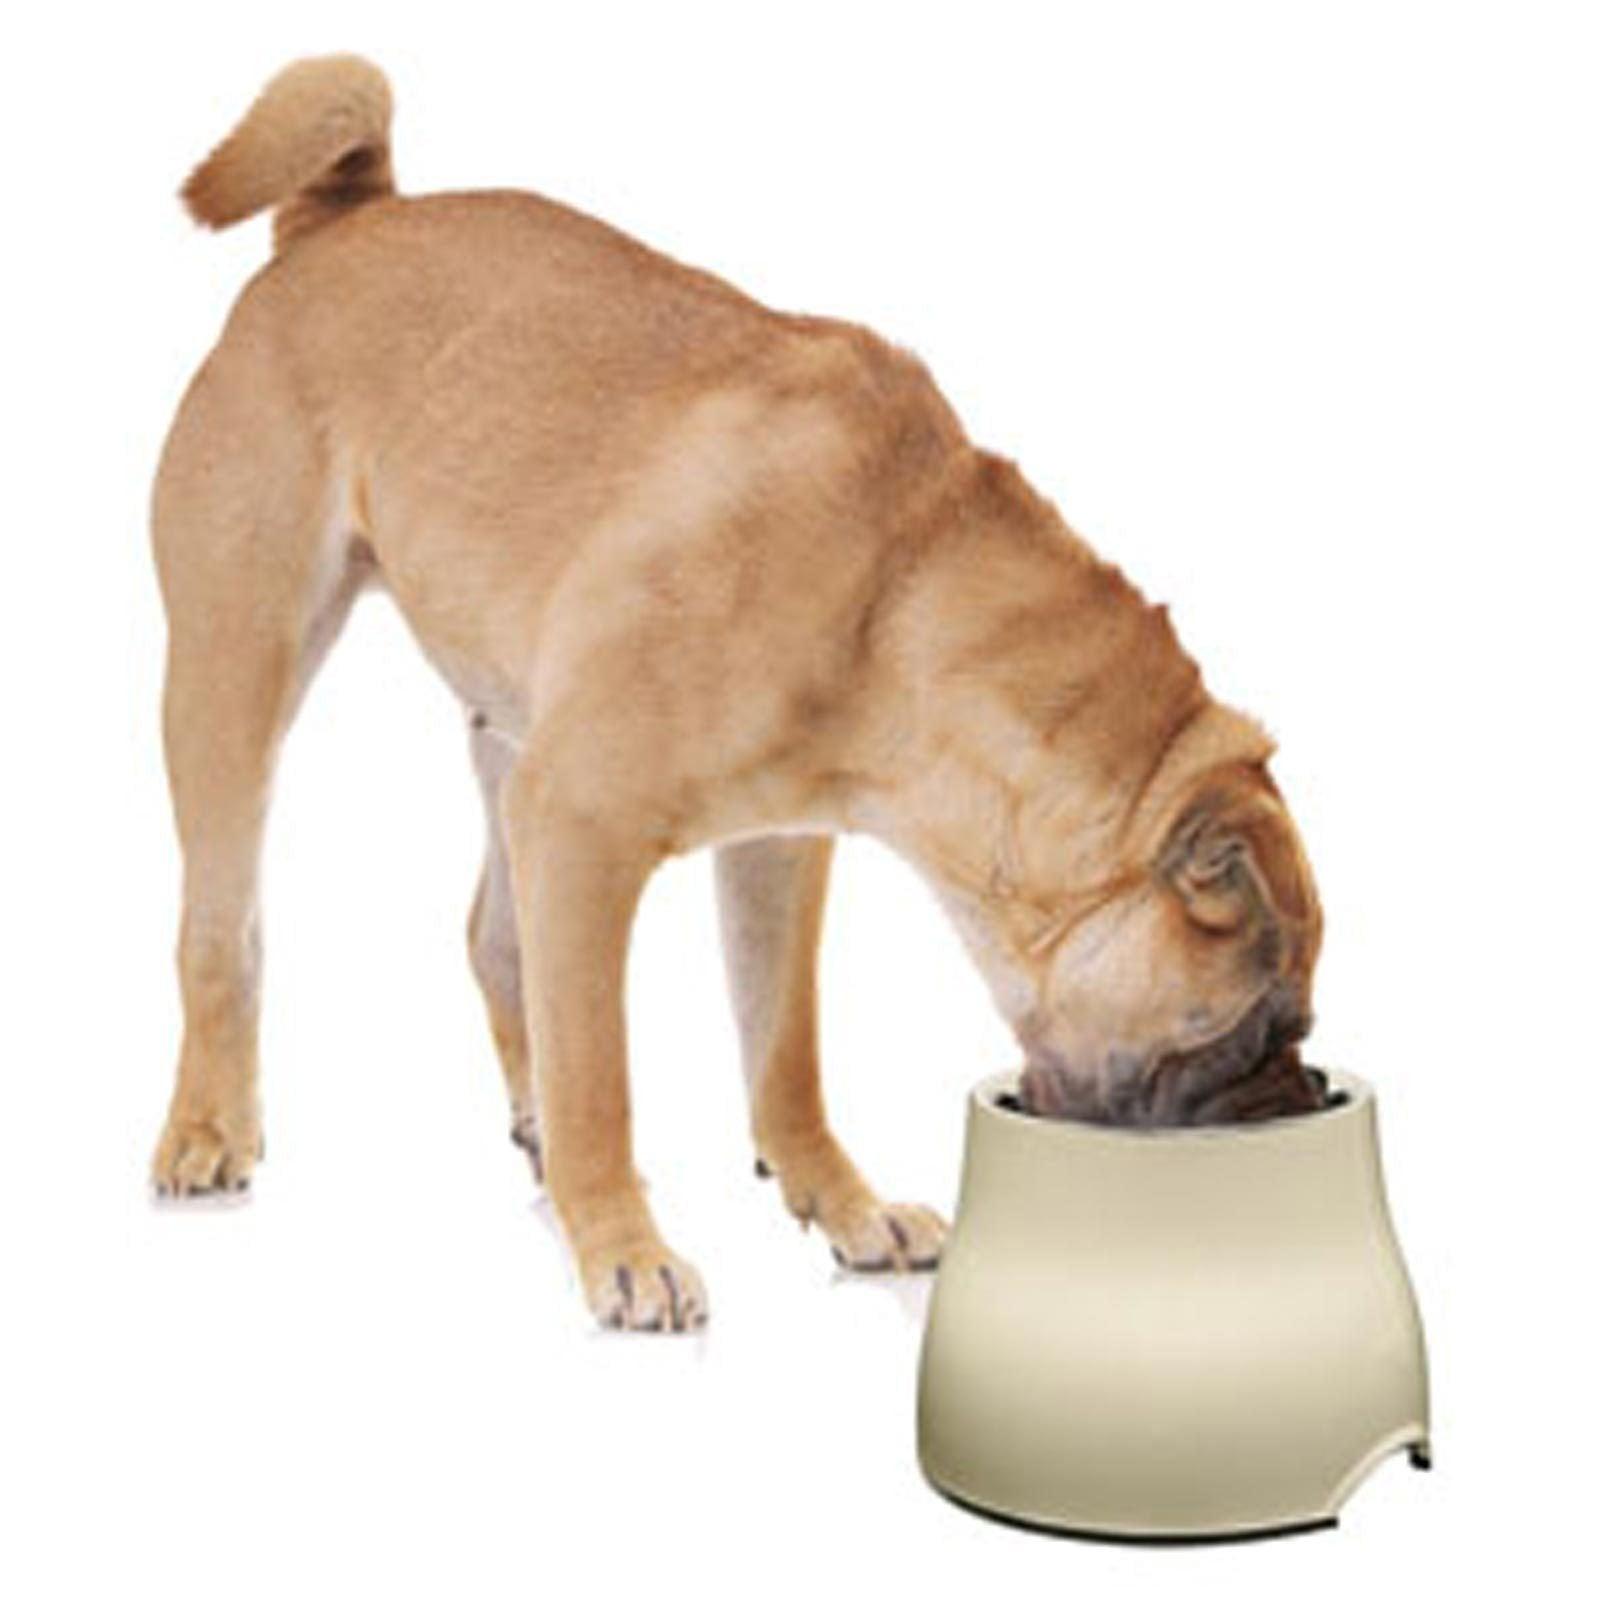 Dogit 2 in 1 Elevated Dog Feeding Bowl Large White